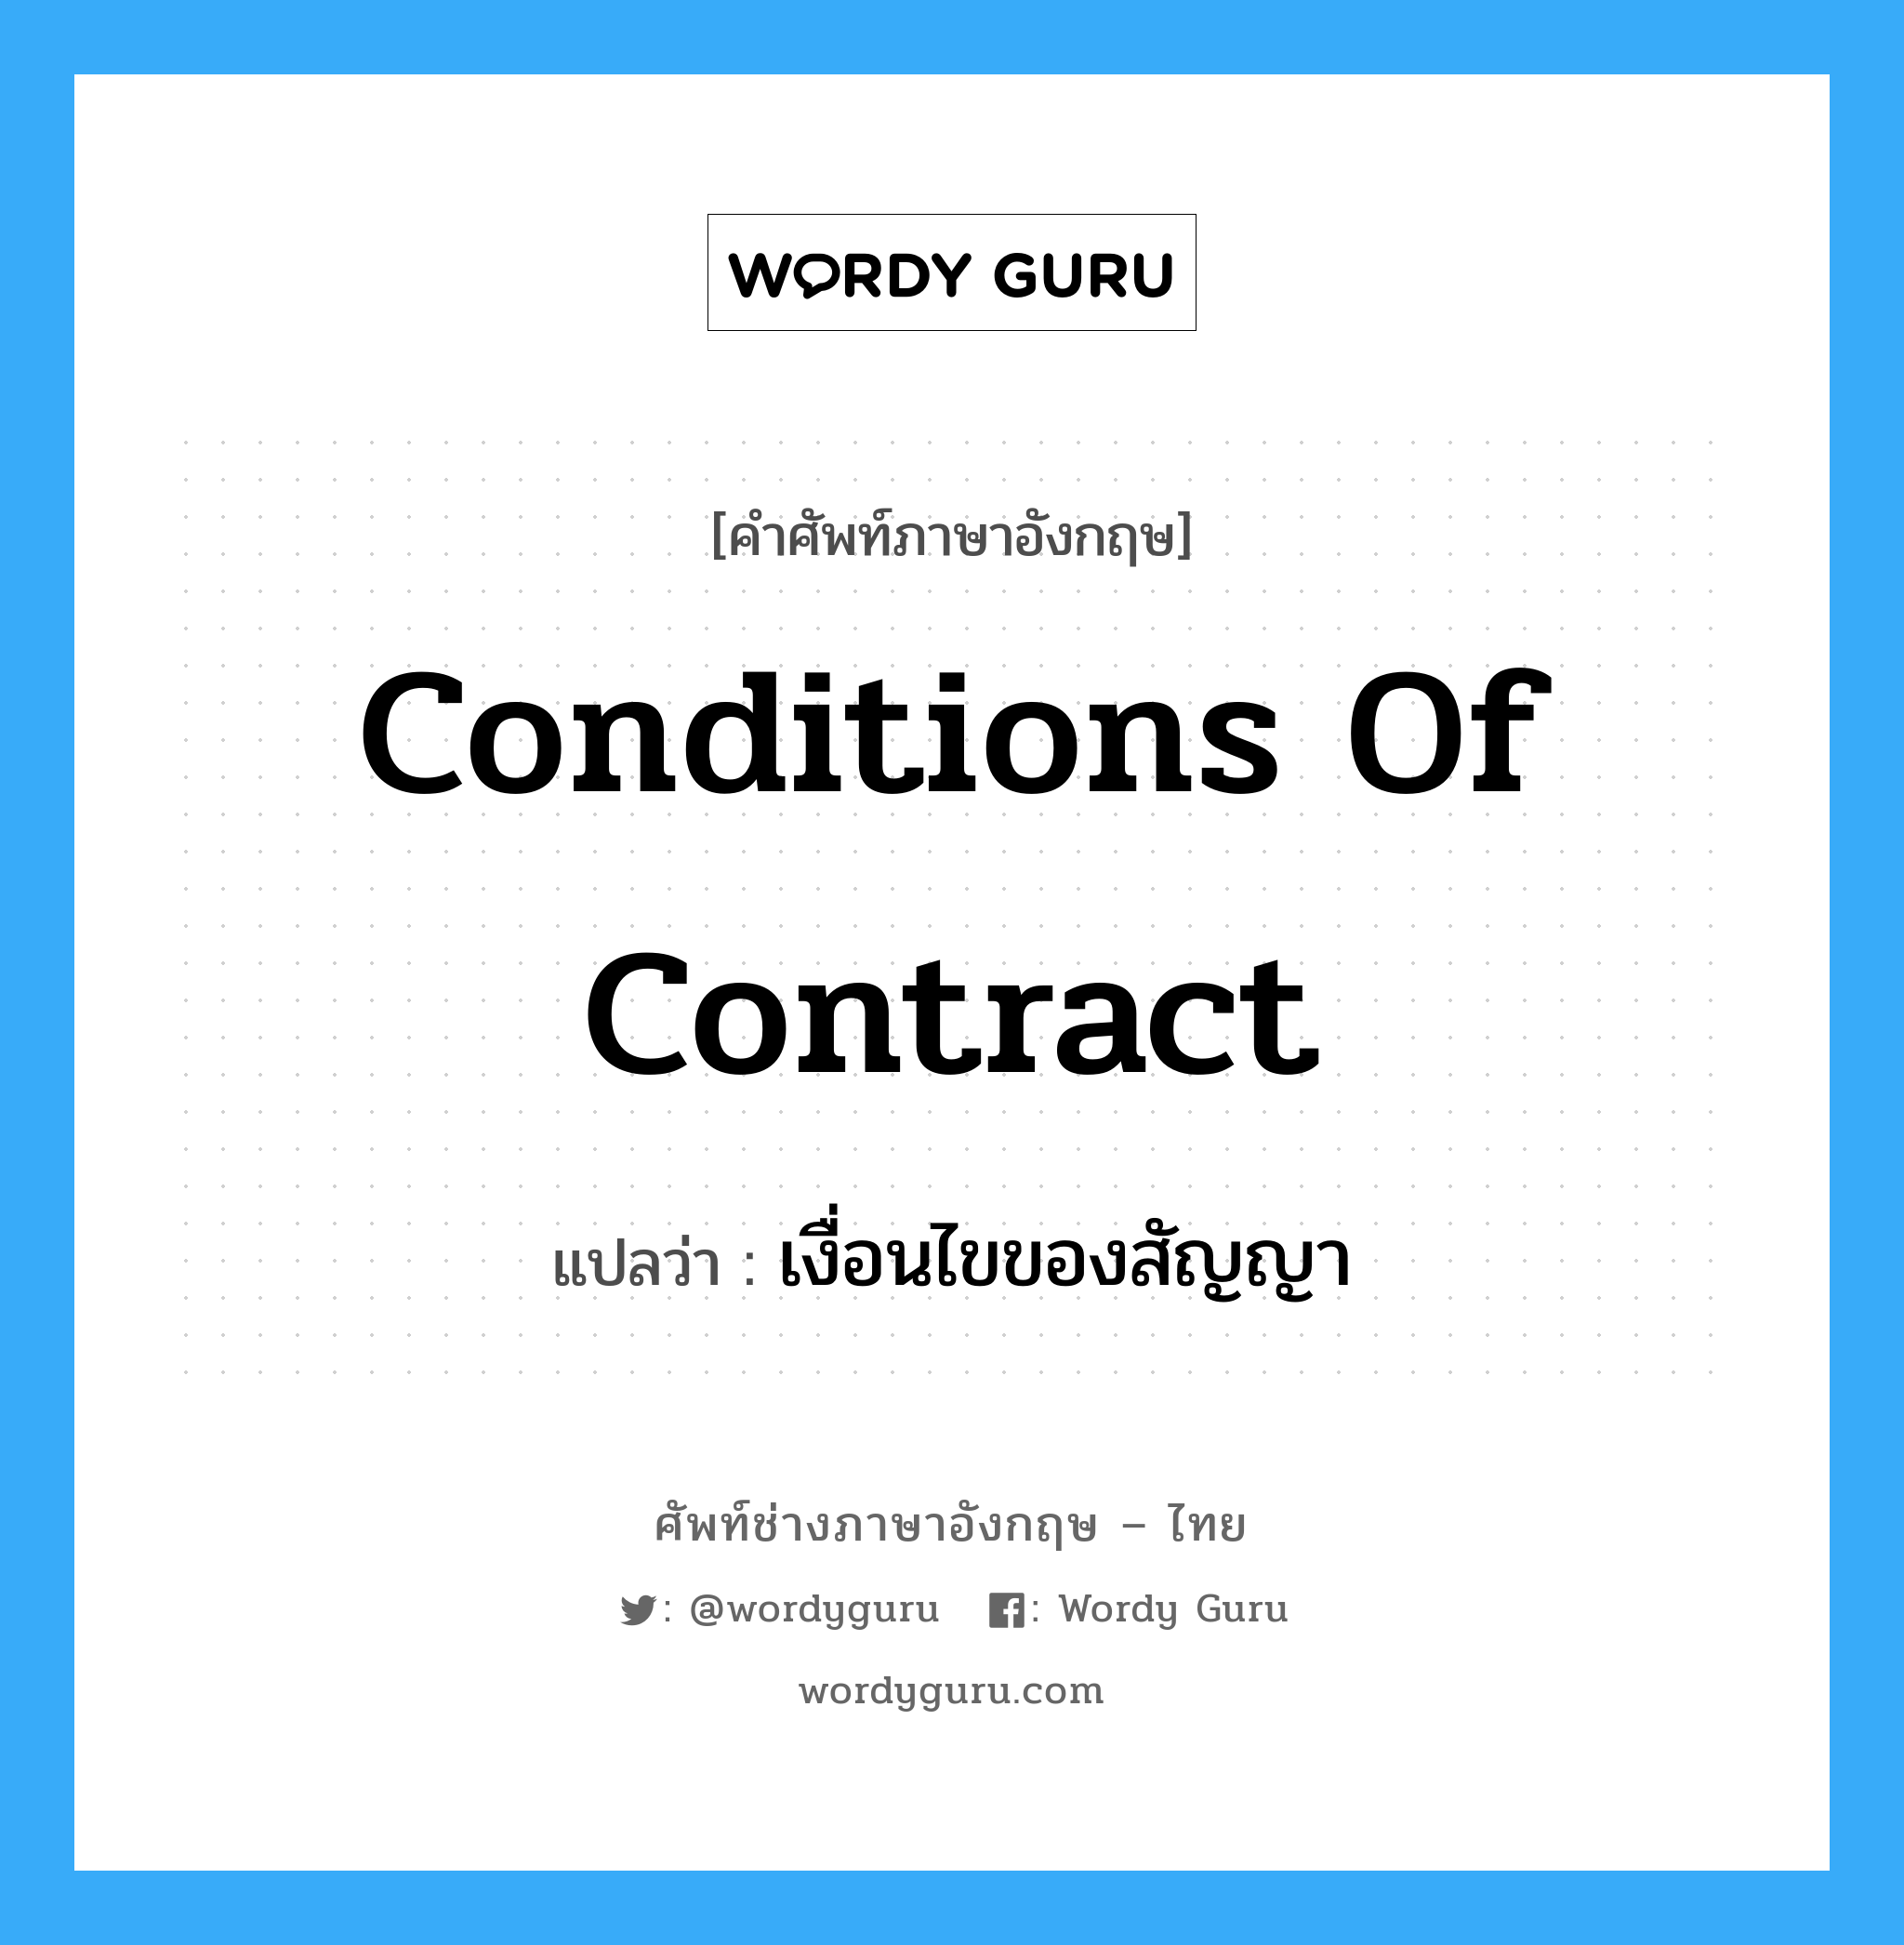 Conditions of Contract แปลว่า?, คำศัพท์ช่างภาษาอังกฤษ - ไทย Conditions of Contract คำศัพท์ภาษาอังกฤษ Conditions of Contract แปลว่า เงื่อนไขของสัญญา